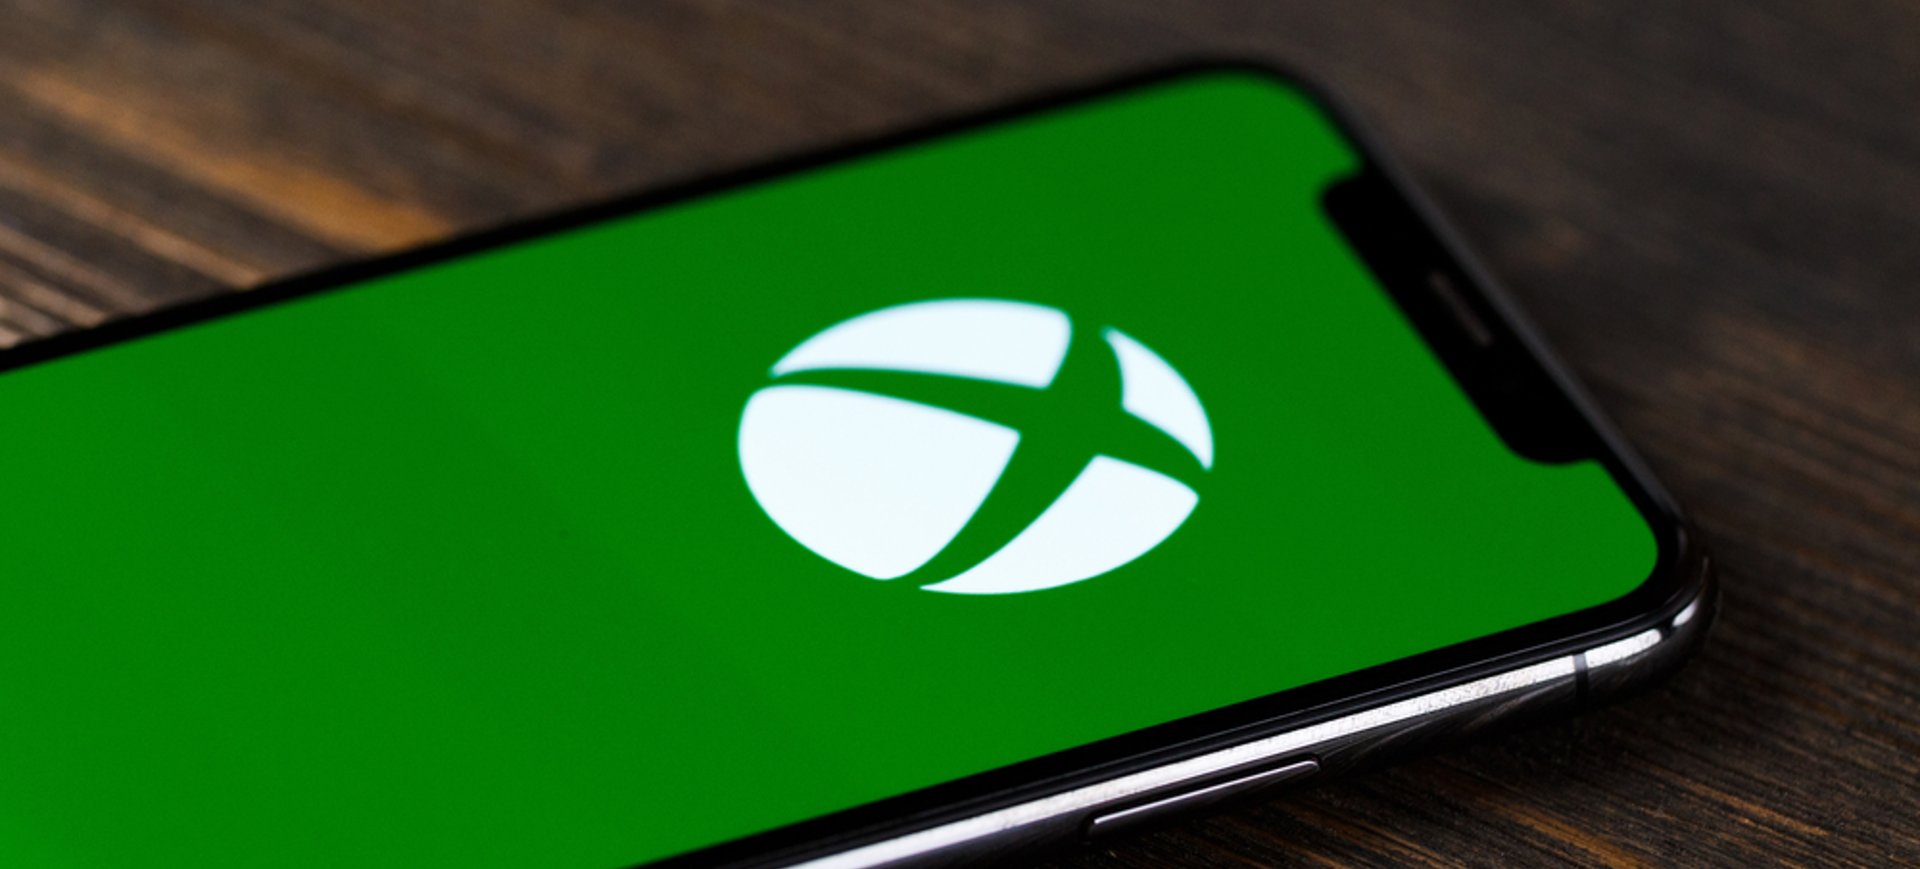 Logo do Xbox na tela de um celular